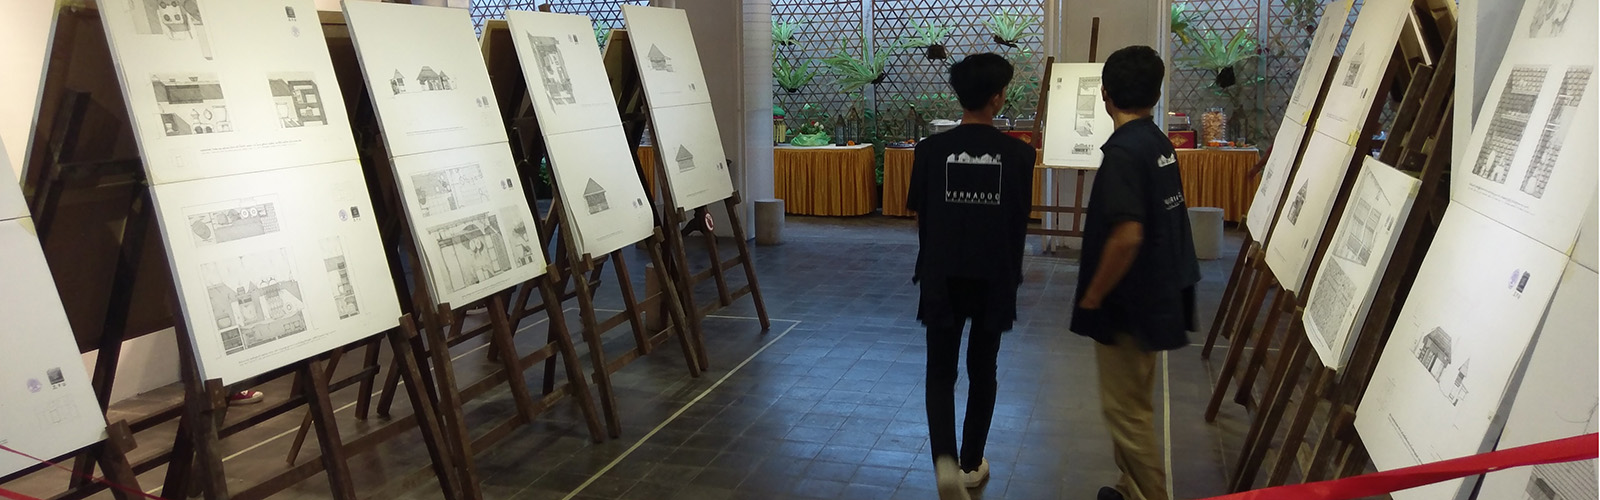 VERNADOC drawings set up for the exhibition at Cush Cush Gallery, Denpasar, Bali